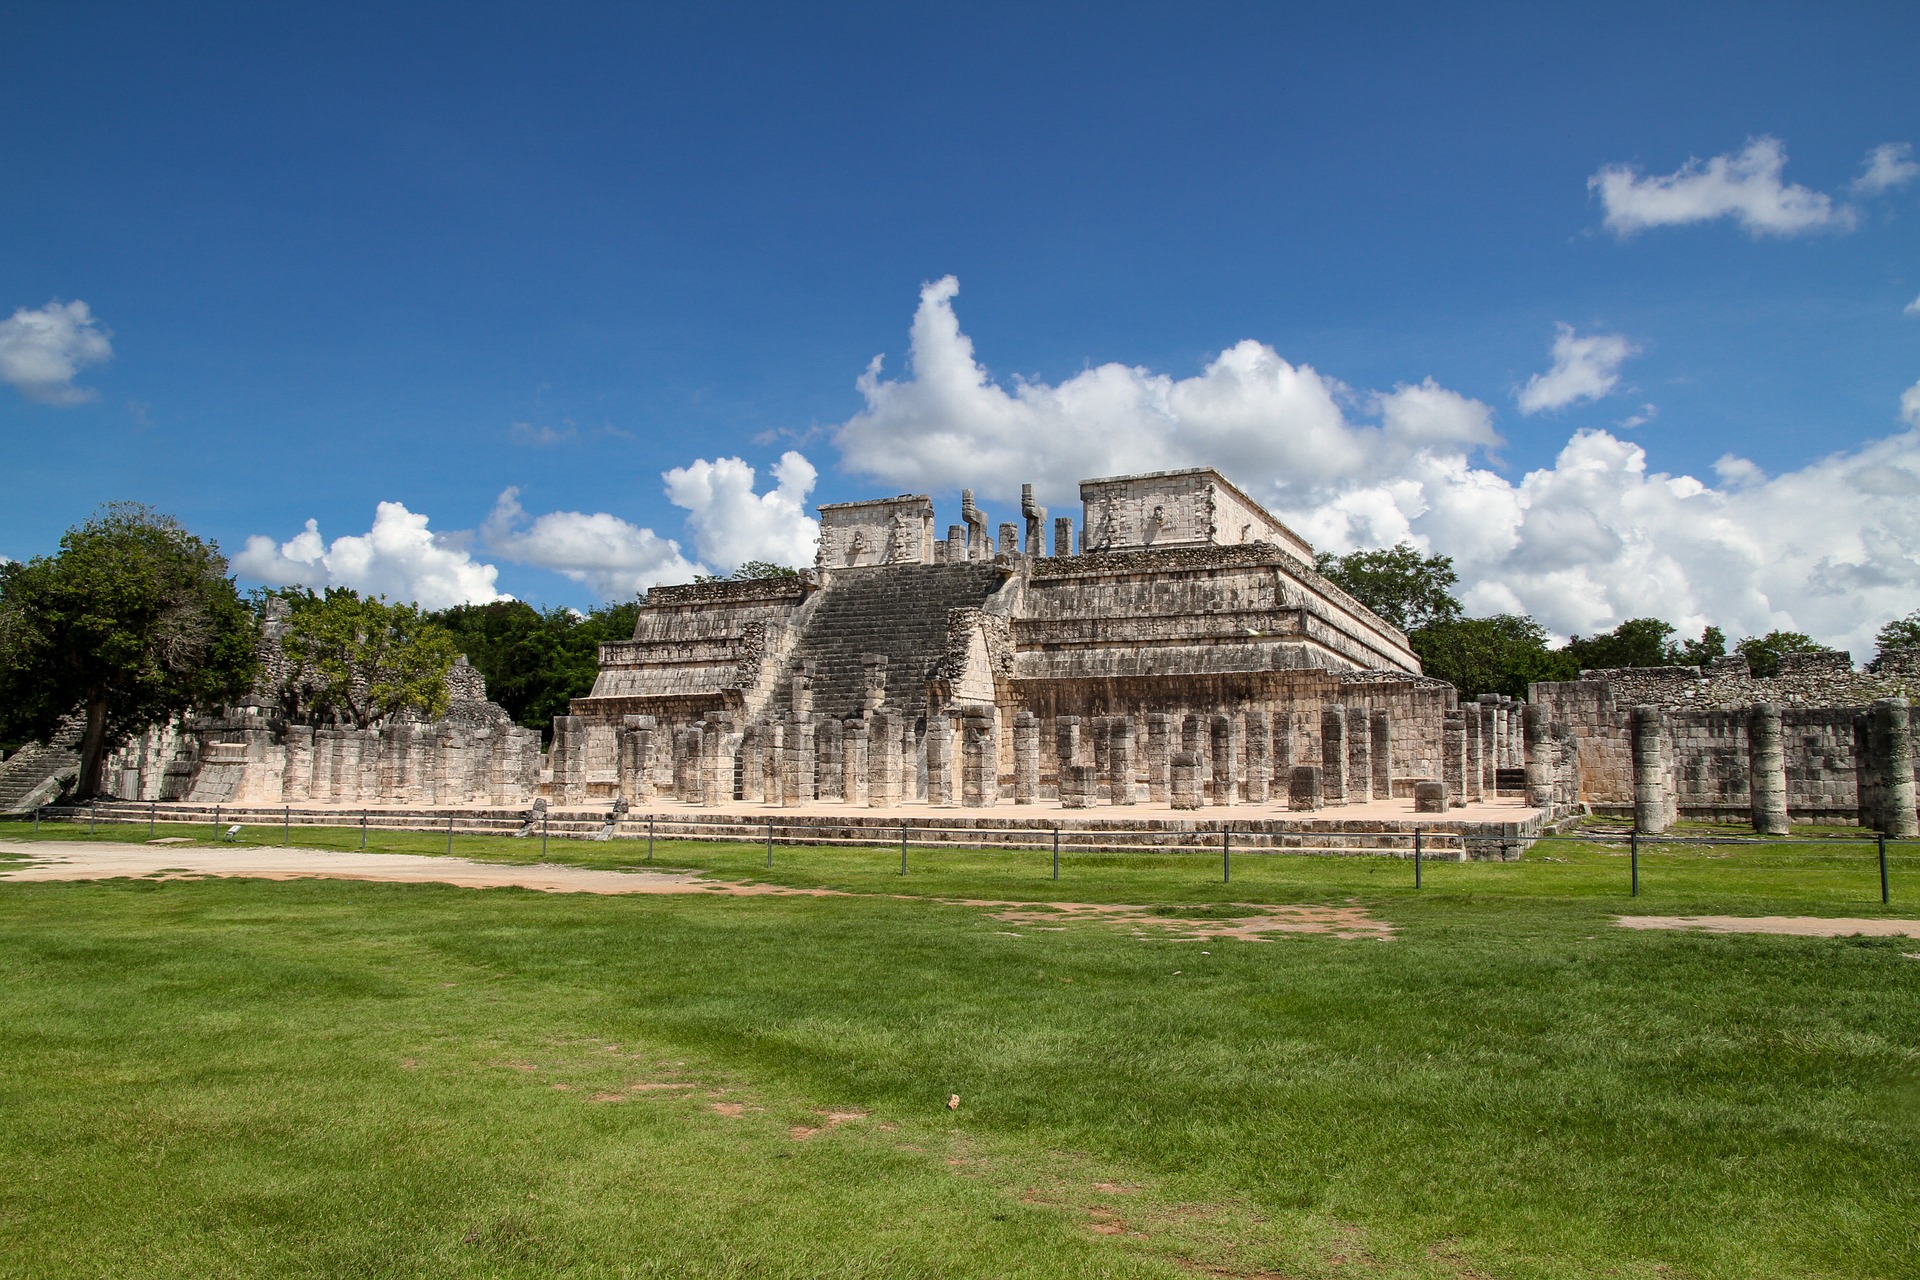 La zona arqueológica está ubicada en el estado de Yucatán (Foto: archivo)